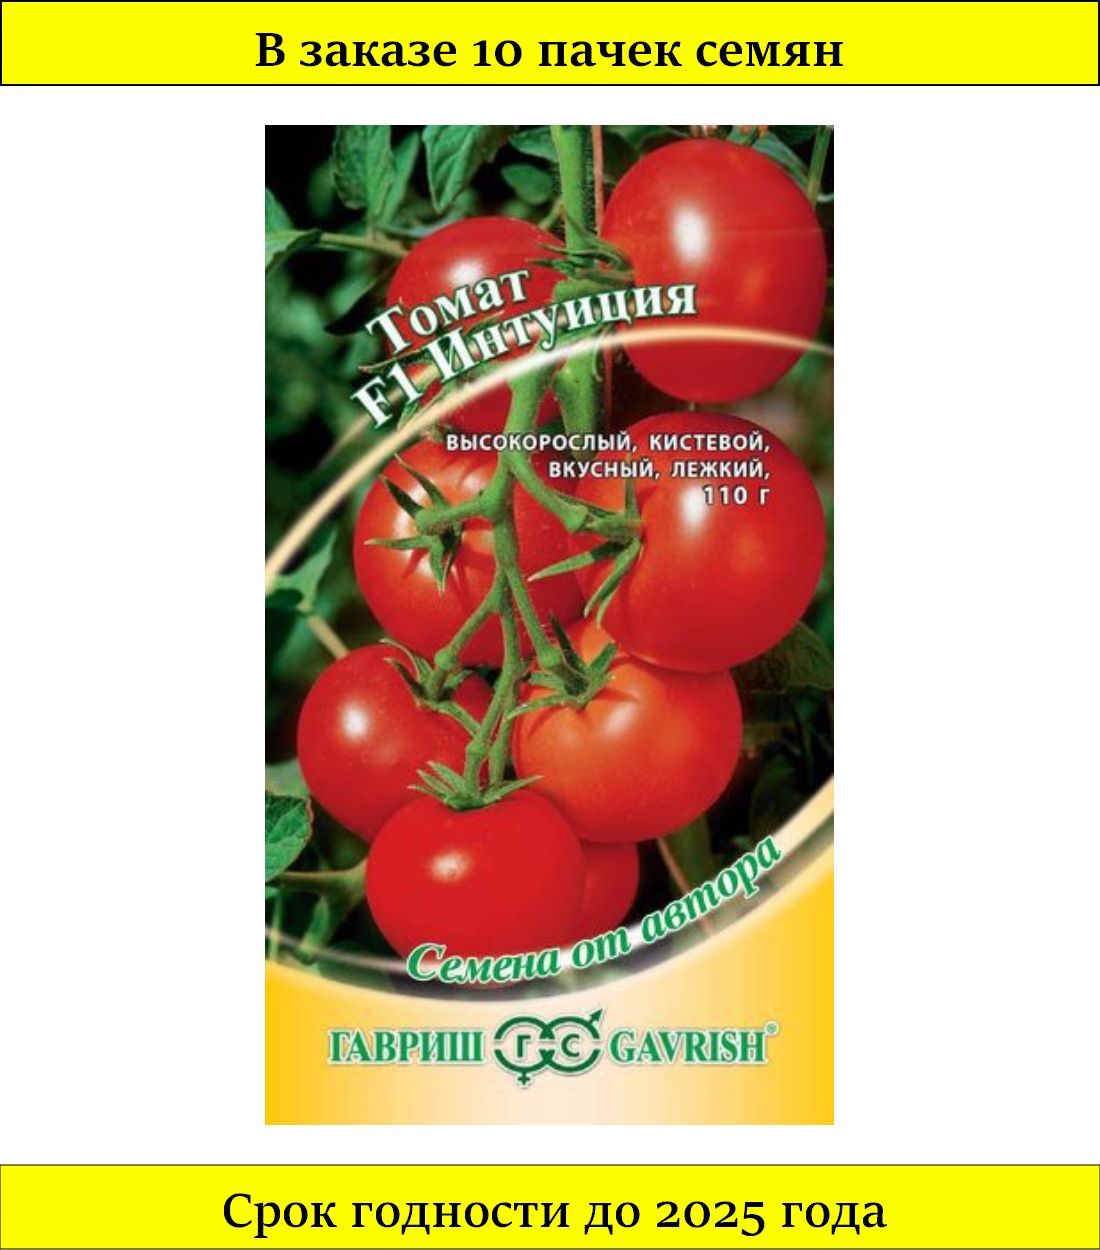 Семена Гавриш семена от автора томат интуиция f1 12 шт.